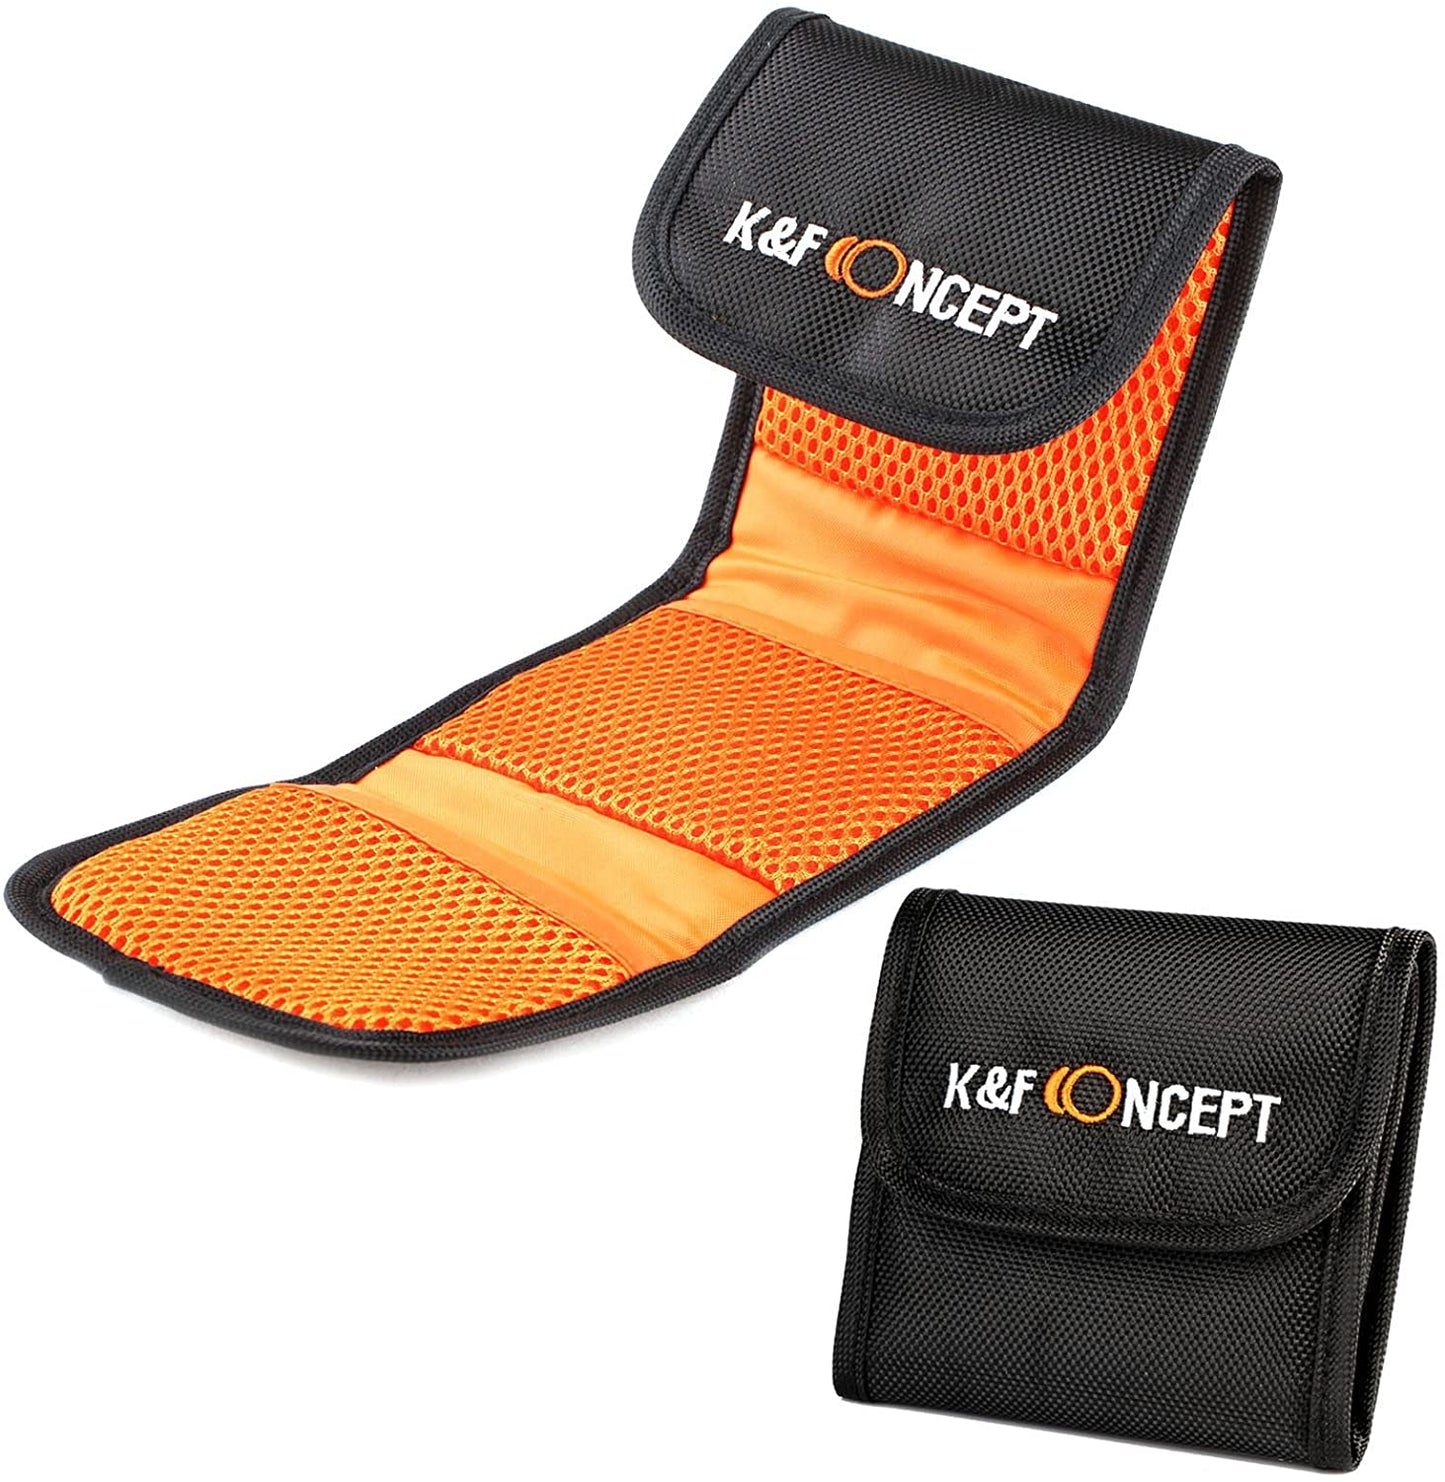 K&F Concept 3-Pocket Small Lens Filter Bag for up to 77mm Camera Lens Filter Holder Wallet Case